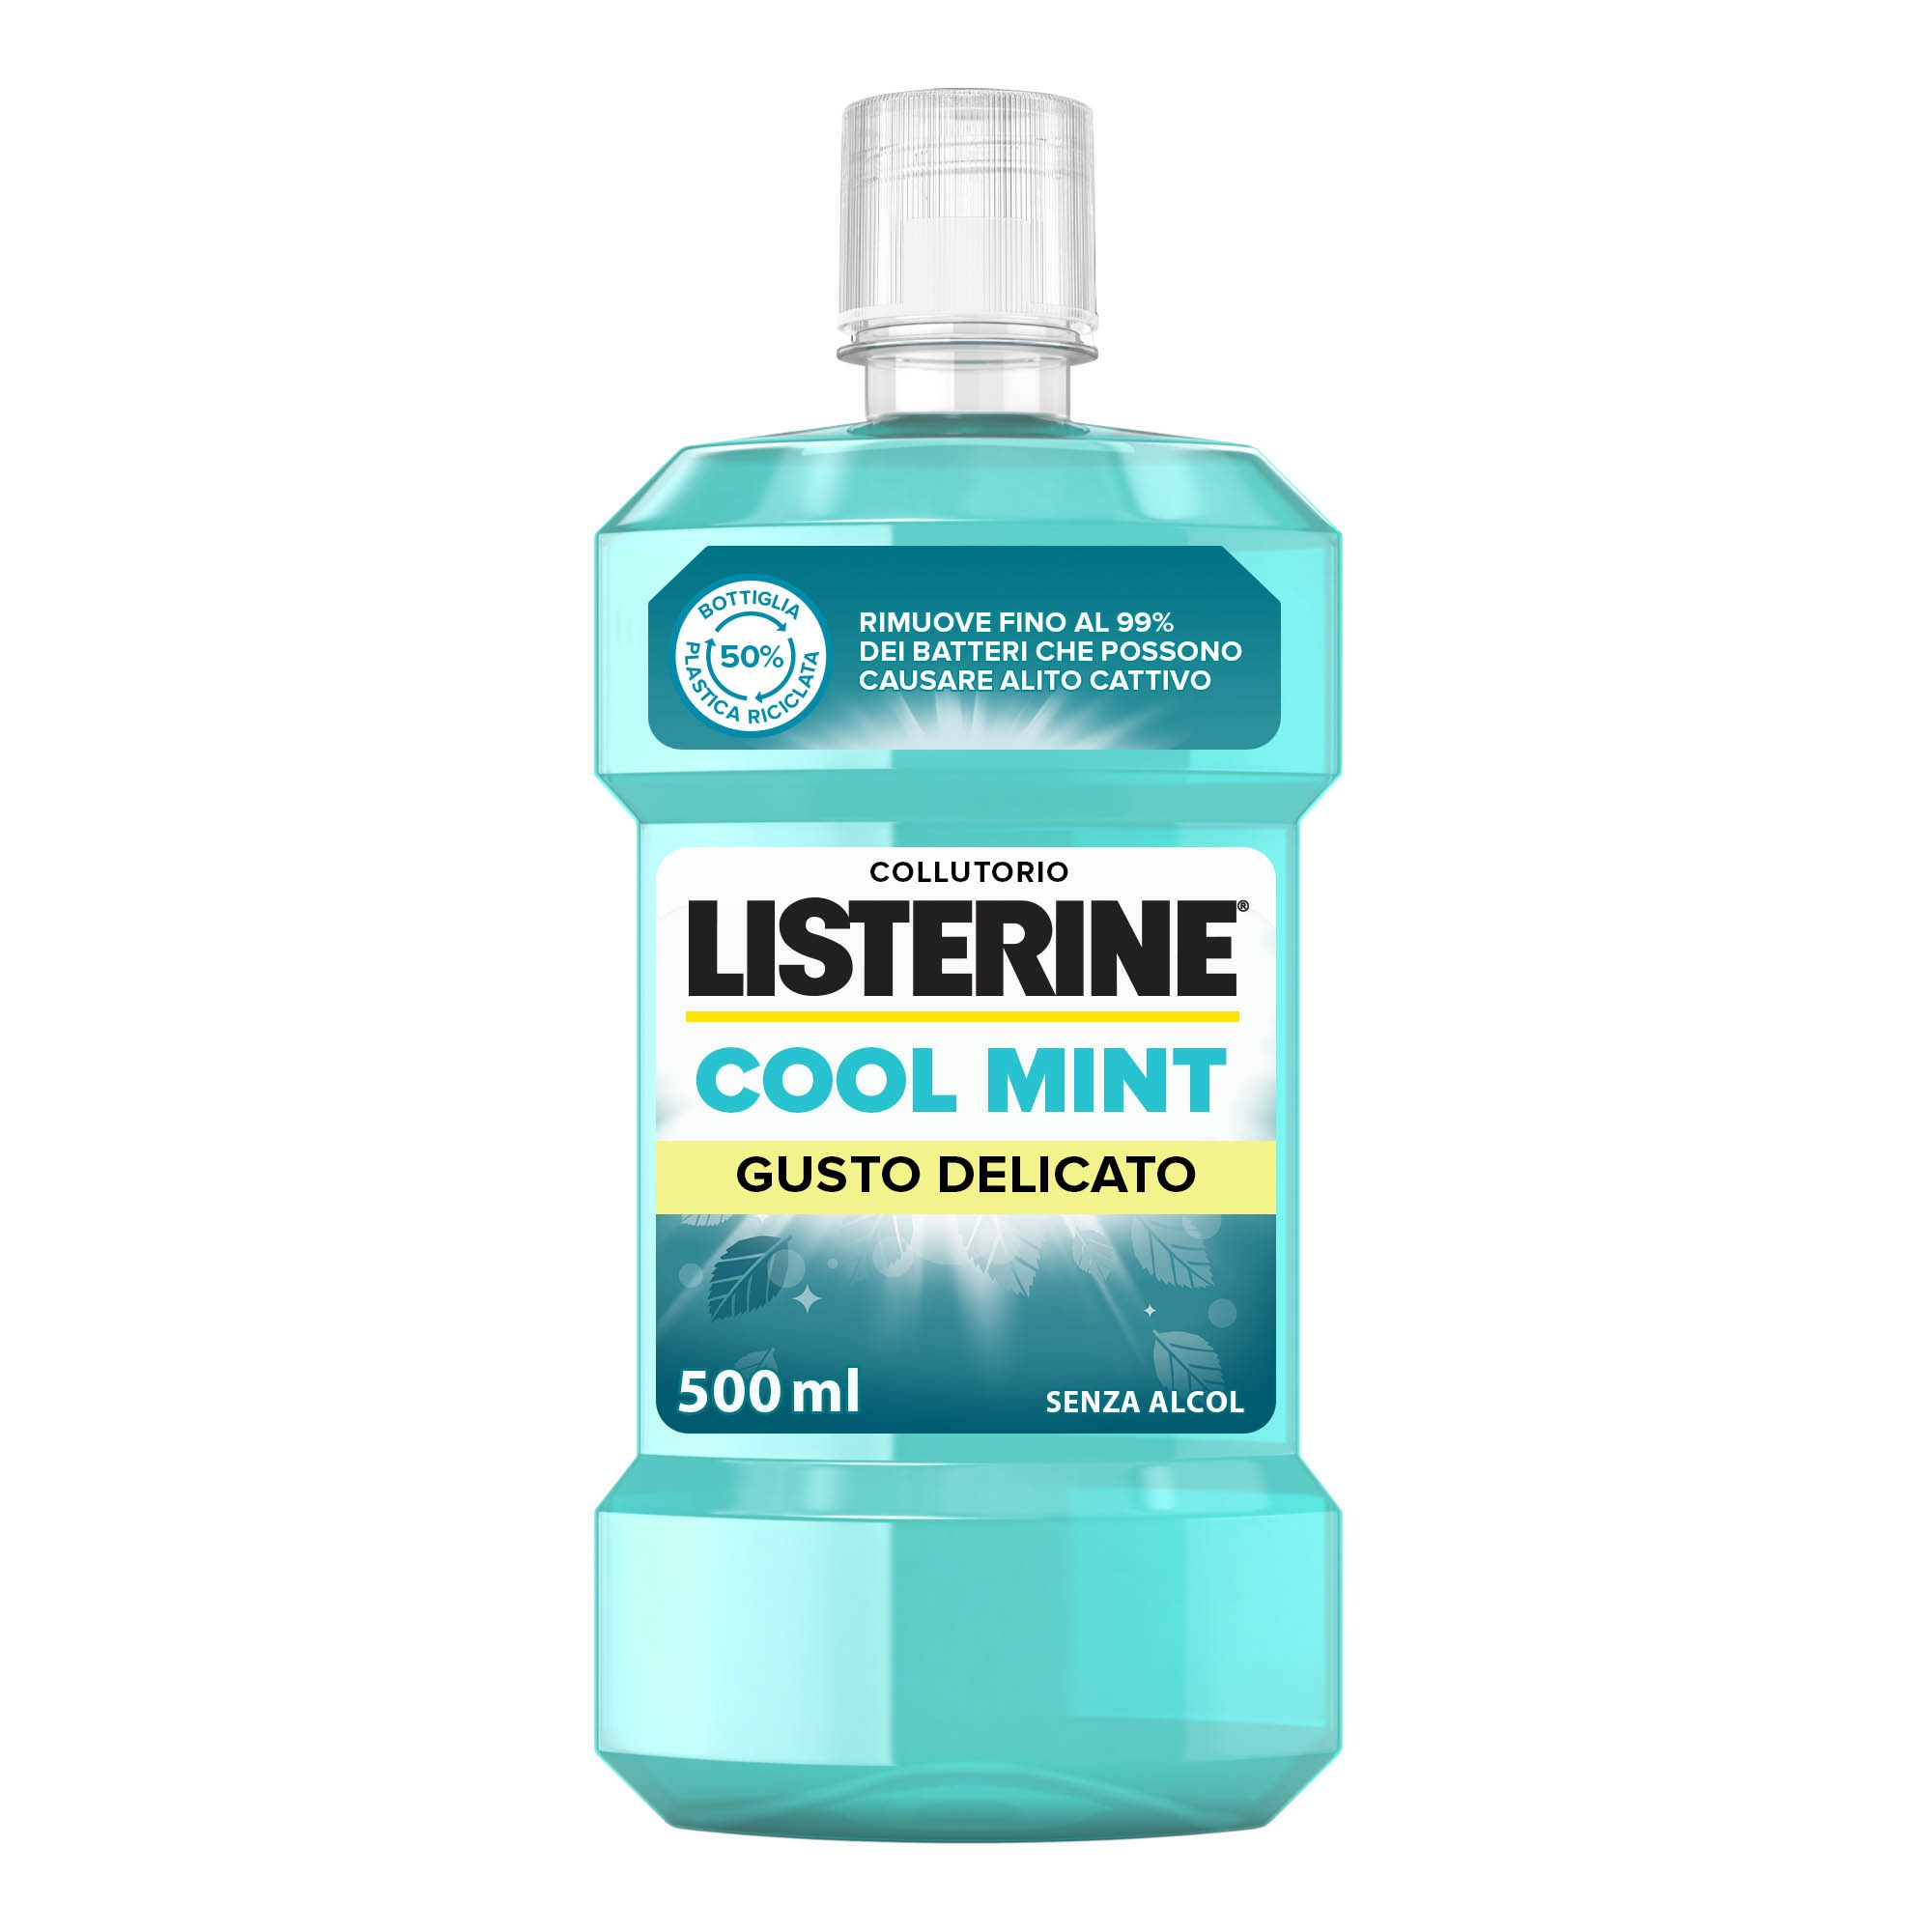 Listerine Cool Mint Collutorio Gusto Delicato 500 ml